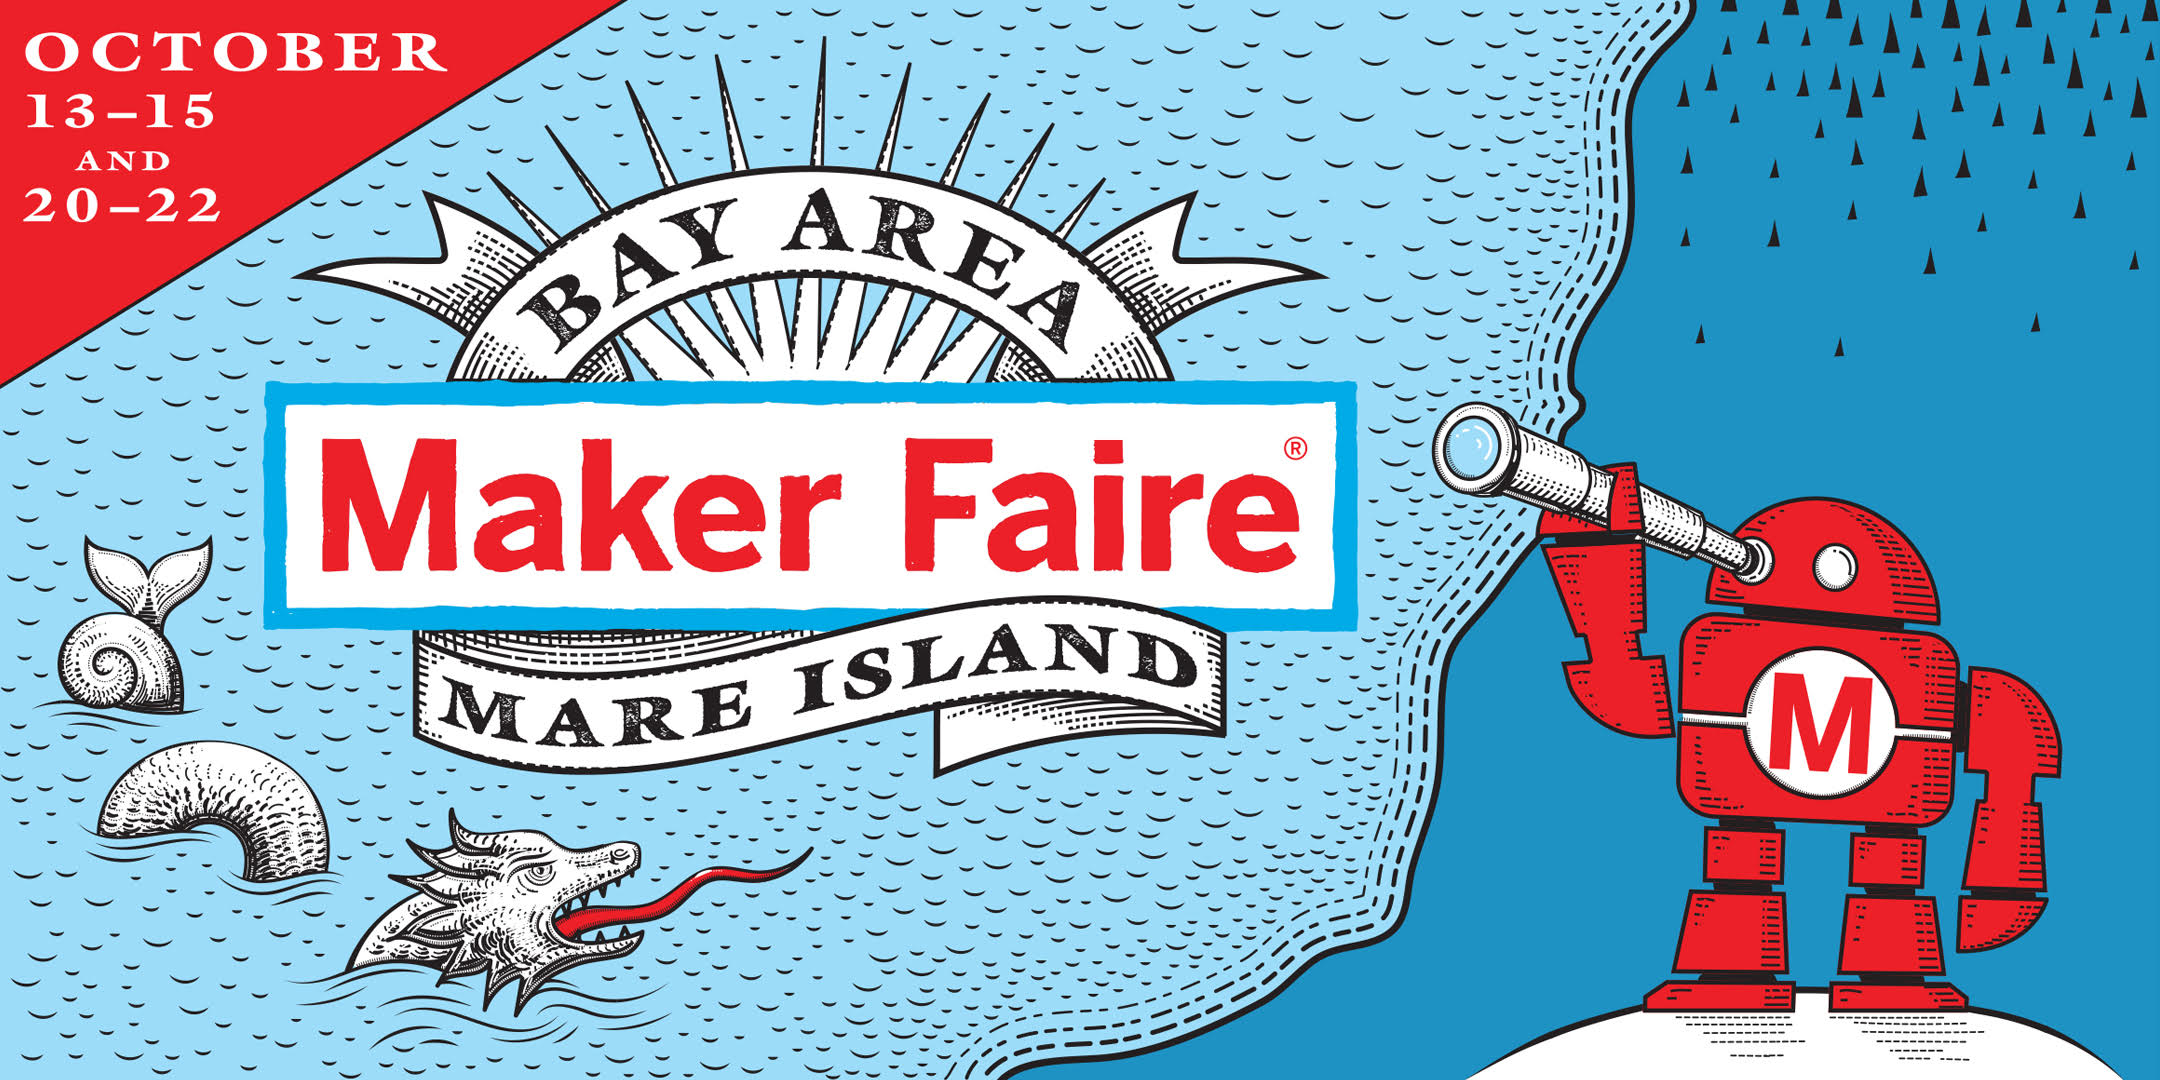 ¡Una gran noticia! Maker Faire Bay Area volverá en octubre